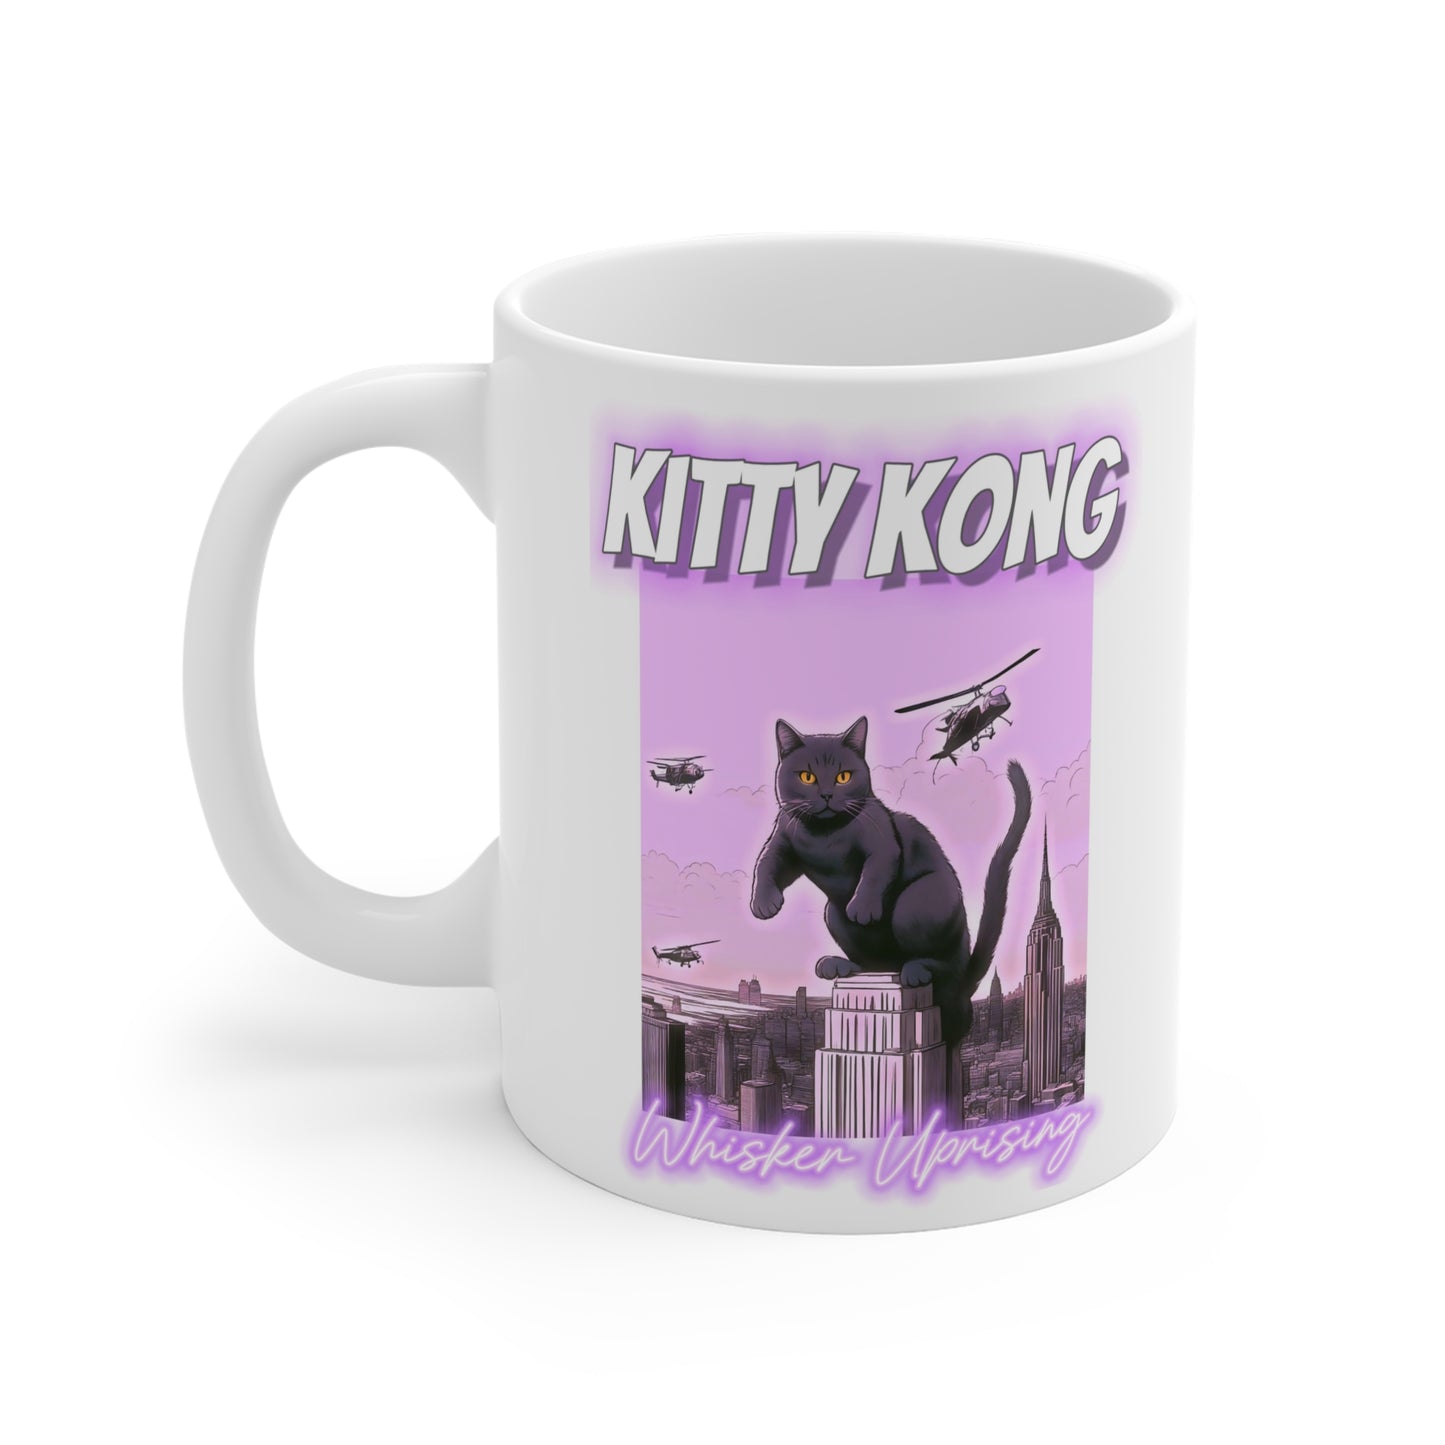 KITTY KONG Mug